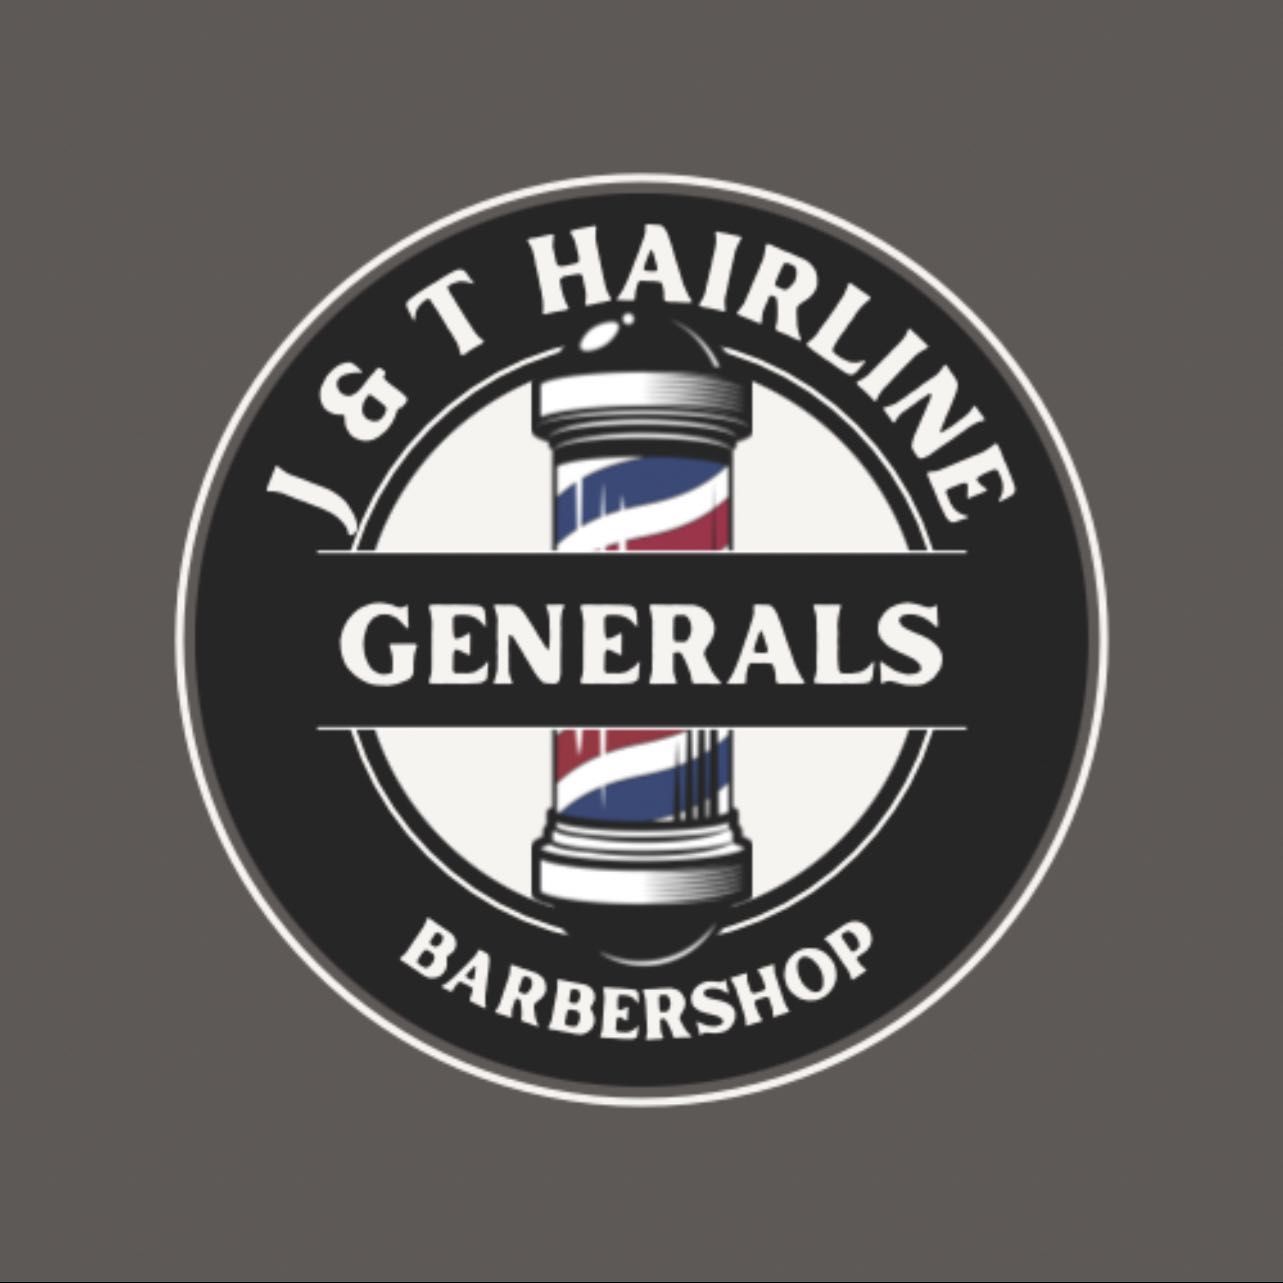 J&T Hairline Generals Barber Shop, 105 Oakwood Ave, Raeford, 28376